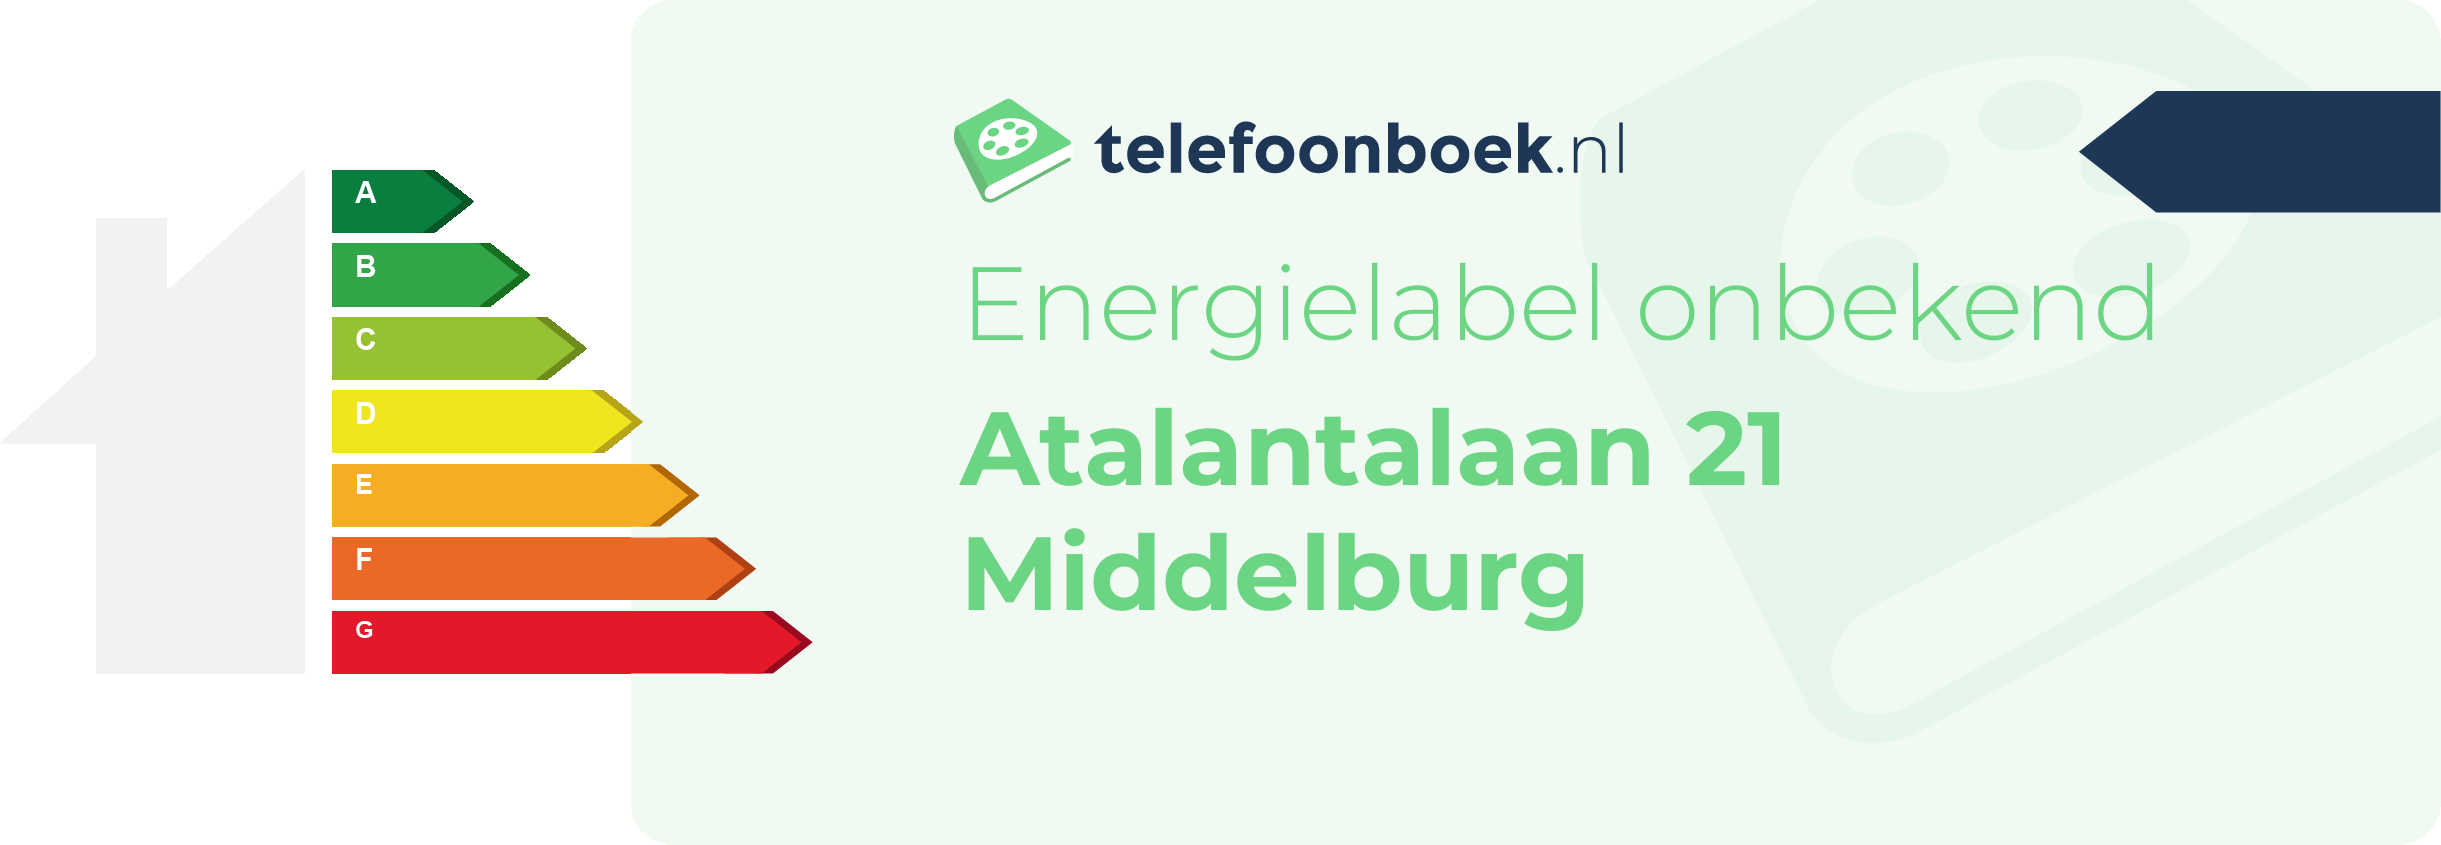 Energielabel Atalantalaan 21 Middelburg